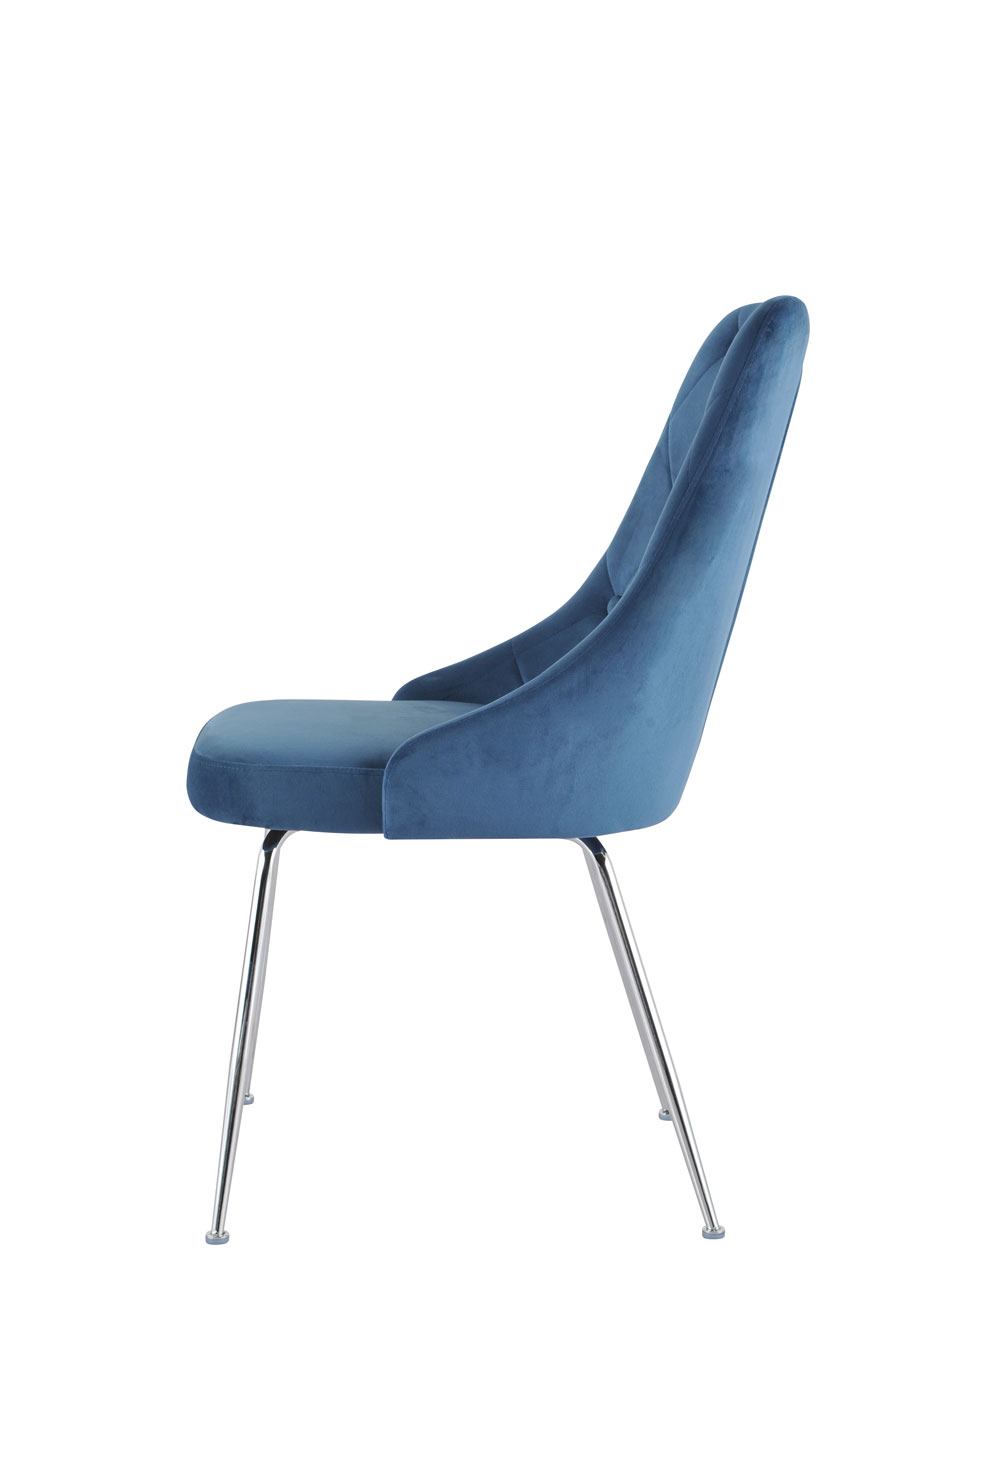 Plumeria Side Chair - Blue, Chrome